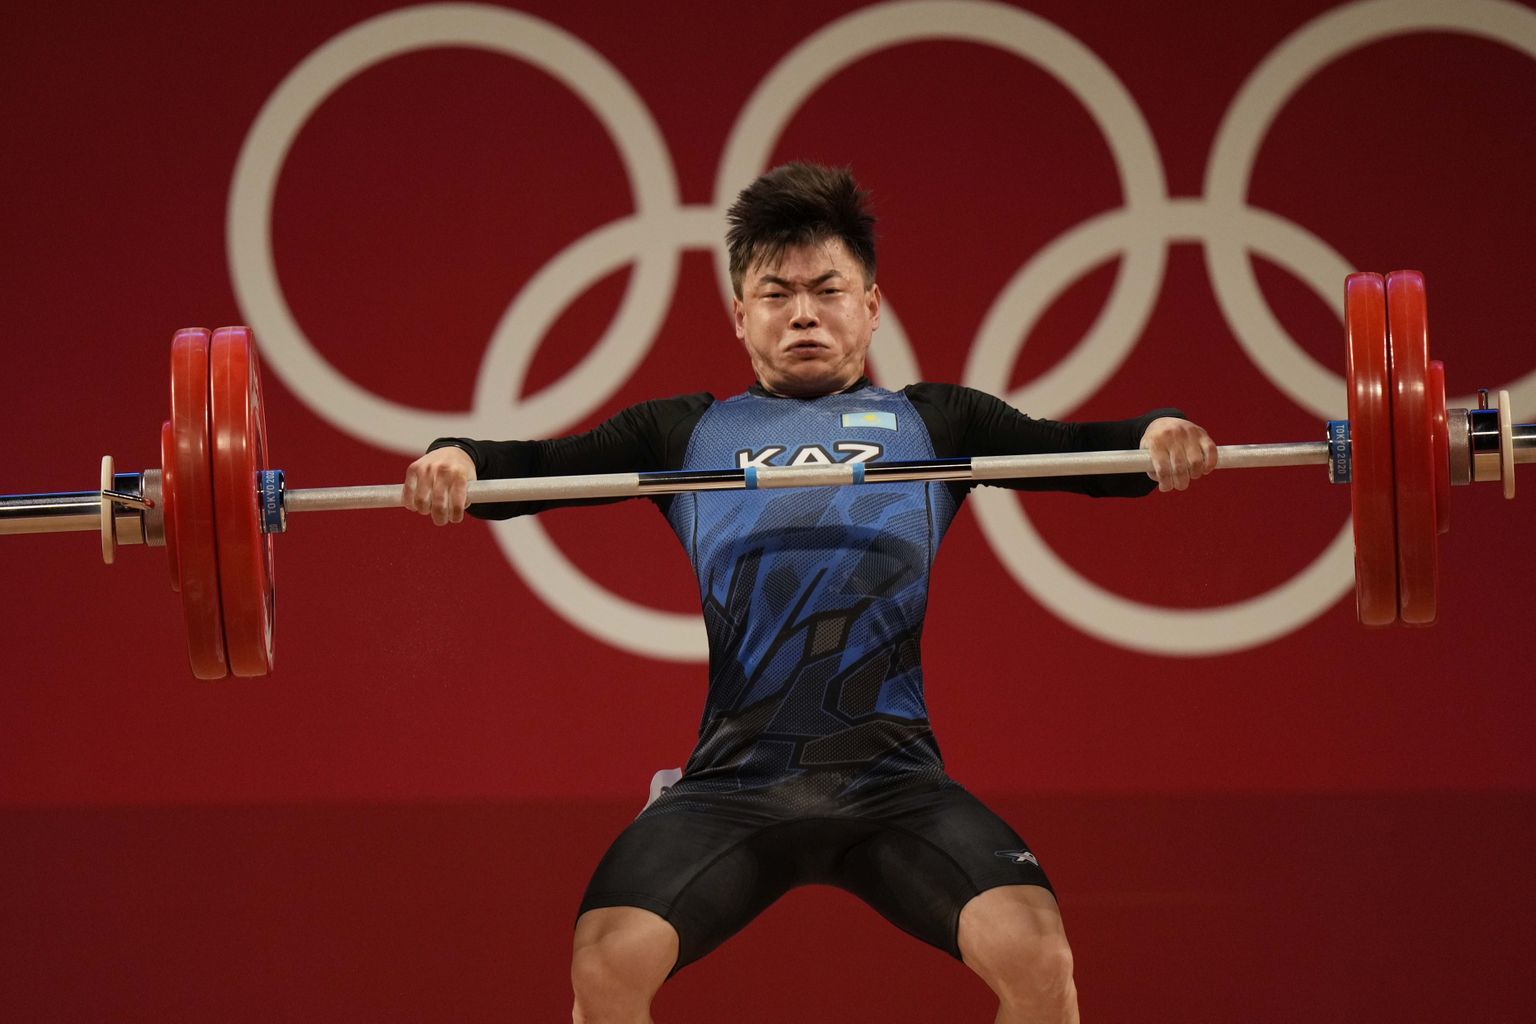 Tokijas olimpisko spēļu bronzas medaļnieks svarcelšanā Igors Sons no Kazahstānas